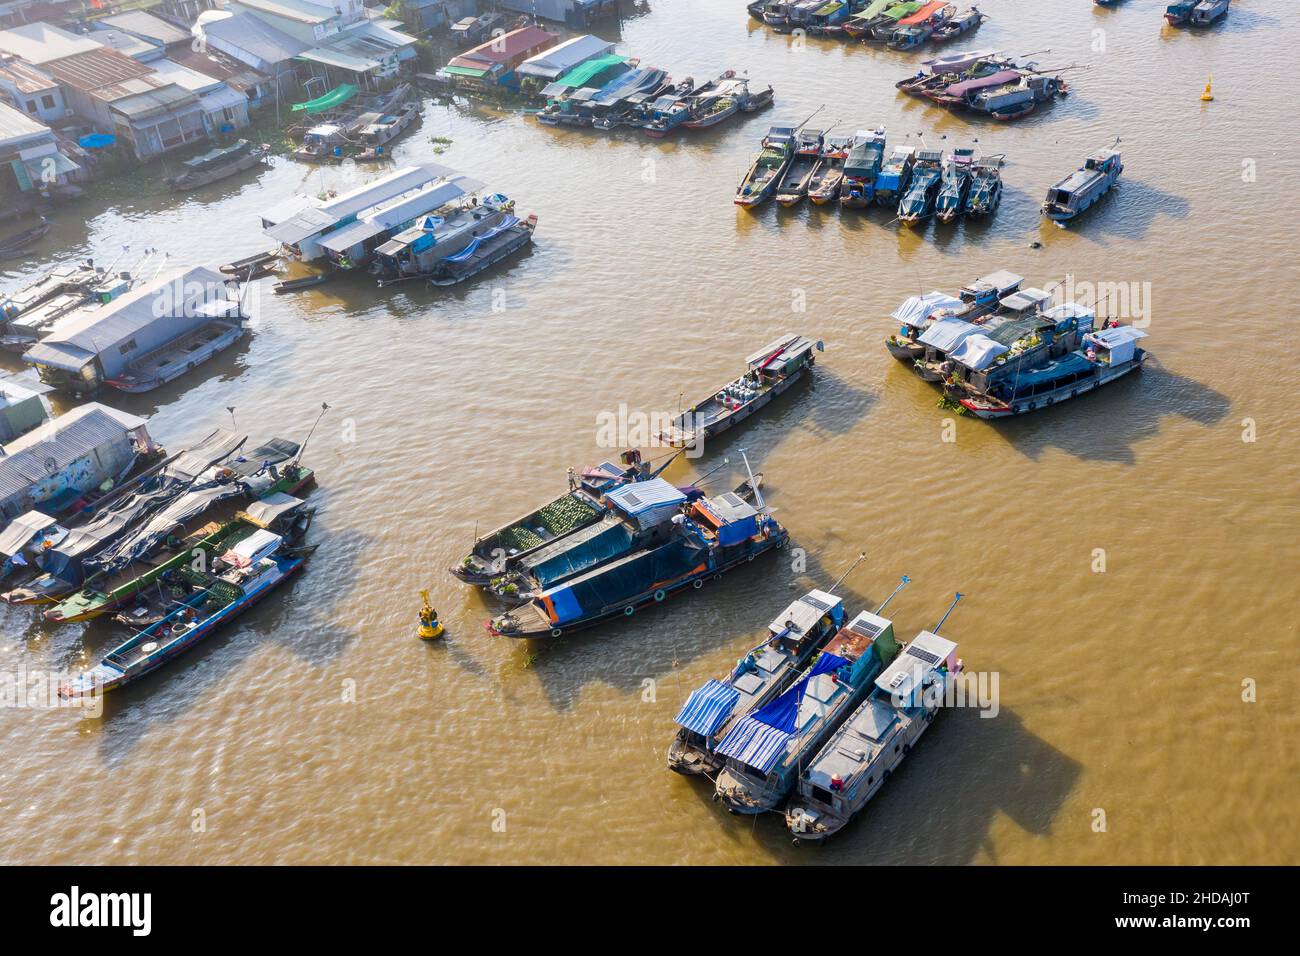 Der schwimmende Markt von Cai Rang ist leer von Touristen und Verkäufer und Käufer werden während der Pandemie von Covid-19 deutlich reduziert Stockfoto